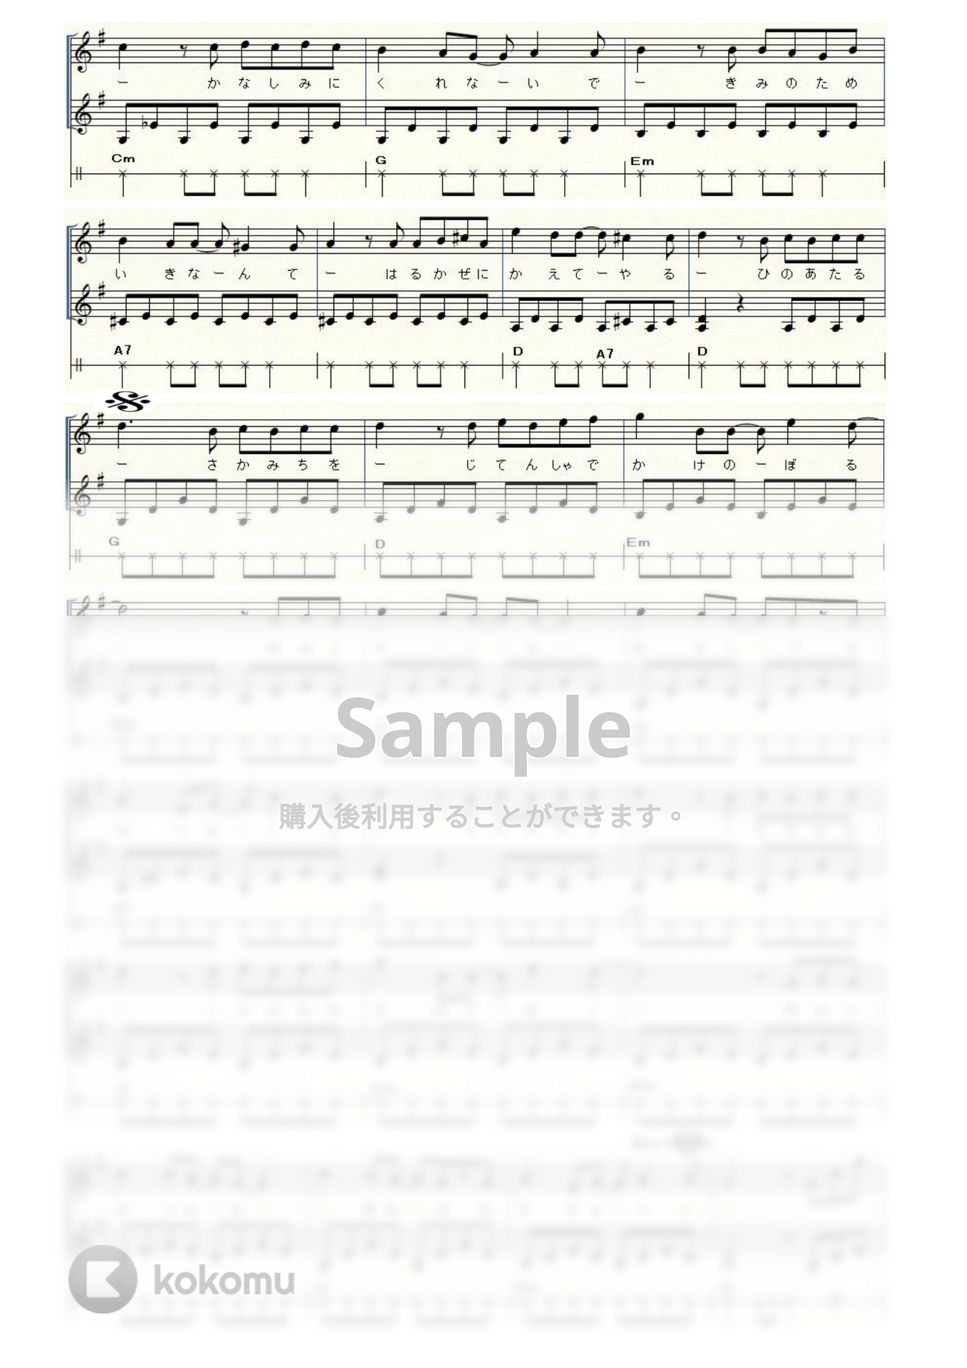 スタジオジブリ映画『猫の恩返し』 - 風になる (ウクレレ三重奏 / High-G・Low-G / 中級) by ukulelepapa